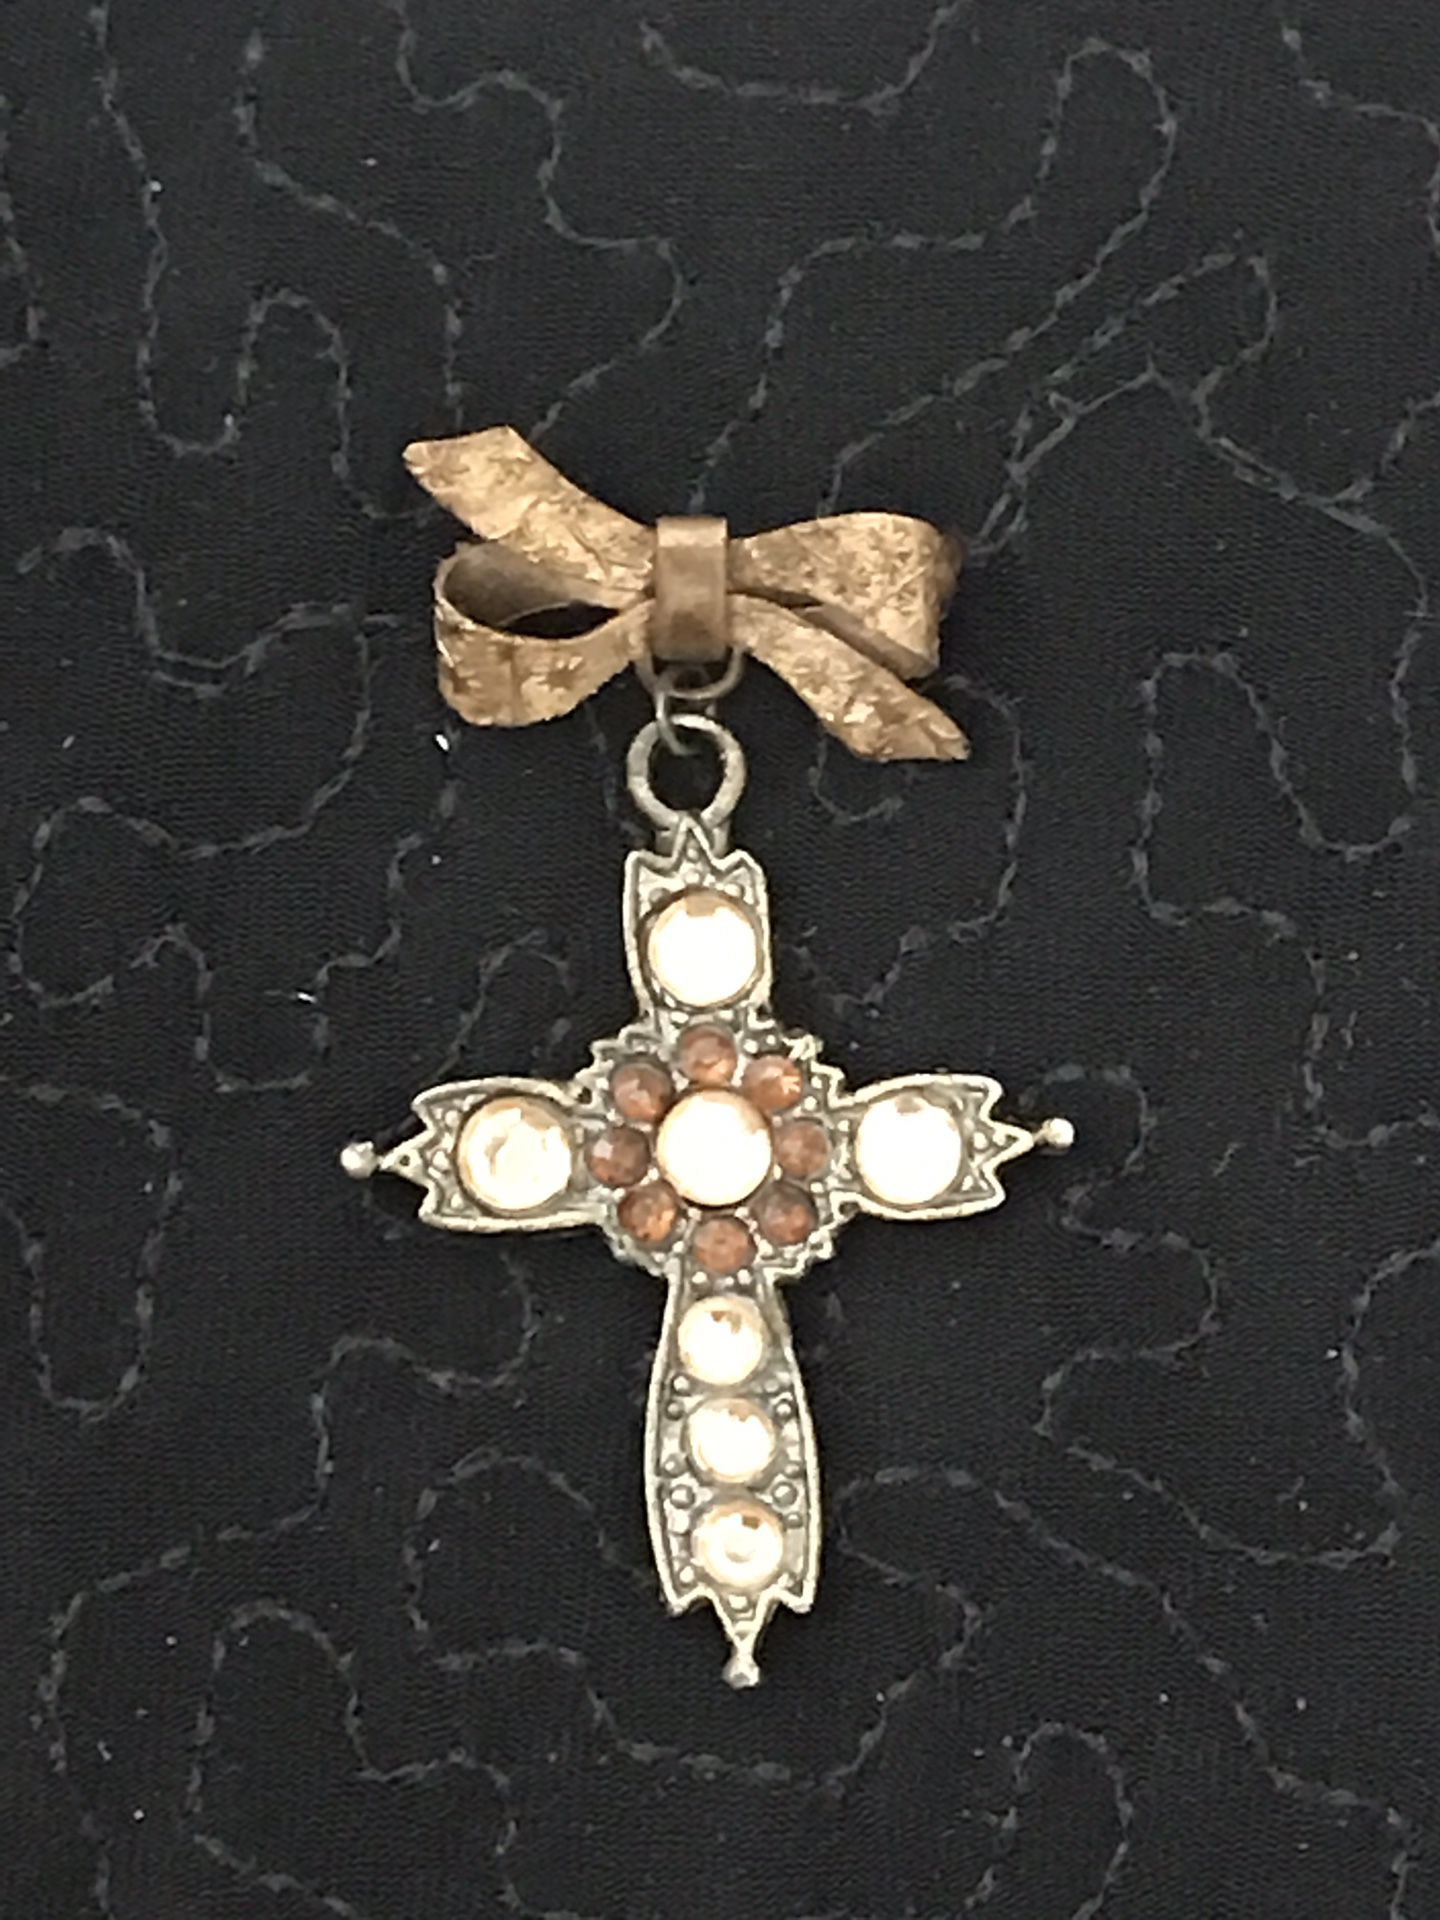 Mourning Cross Brooch Lapel Pin